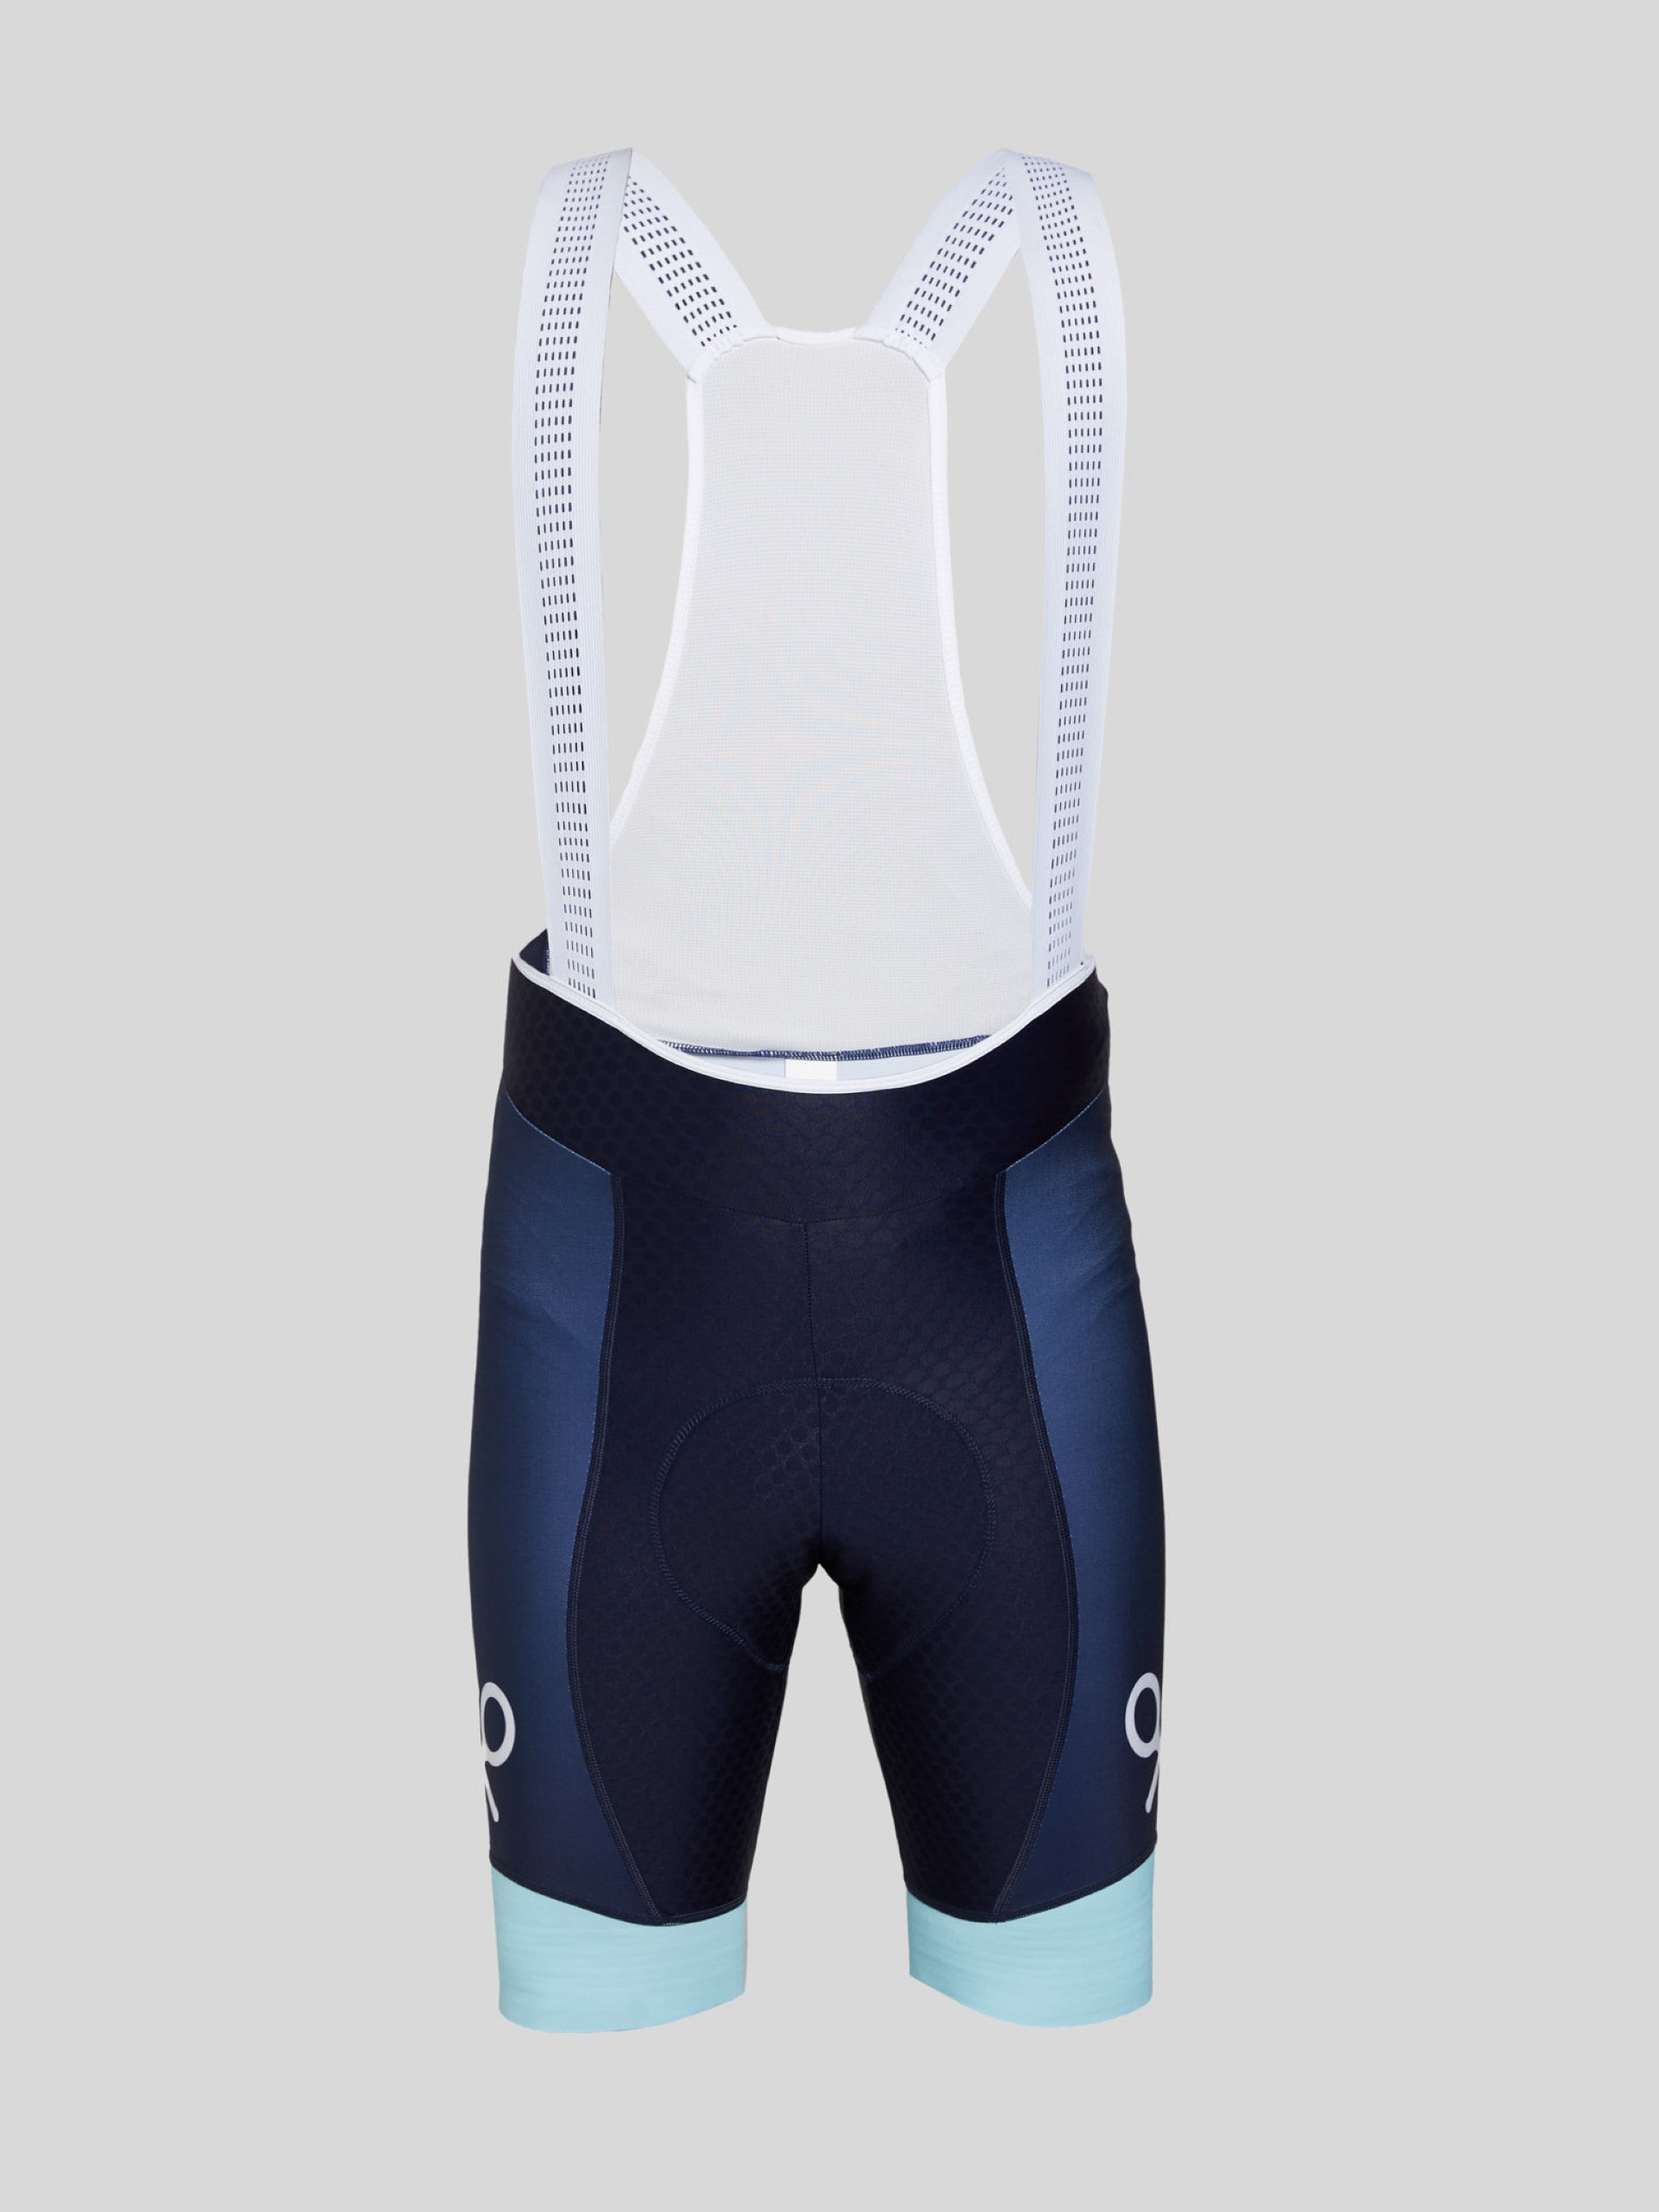 Silbon navy blue cycling shorts